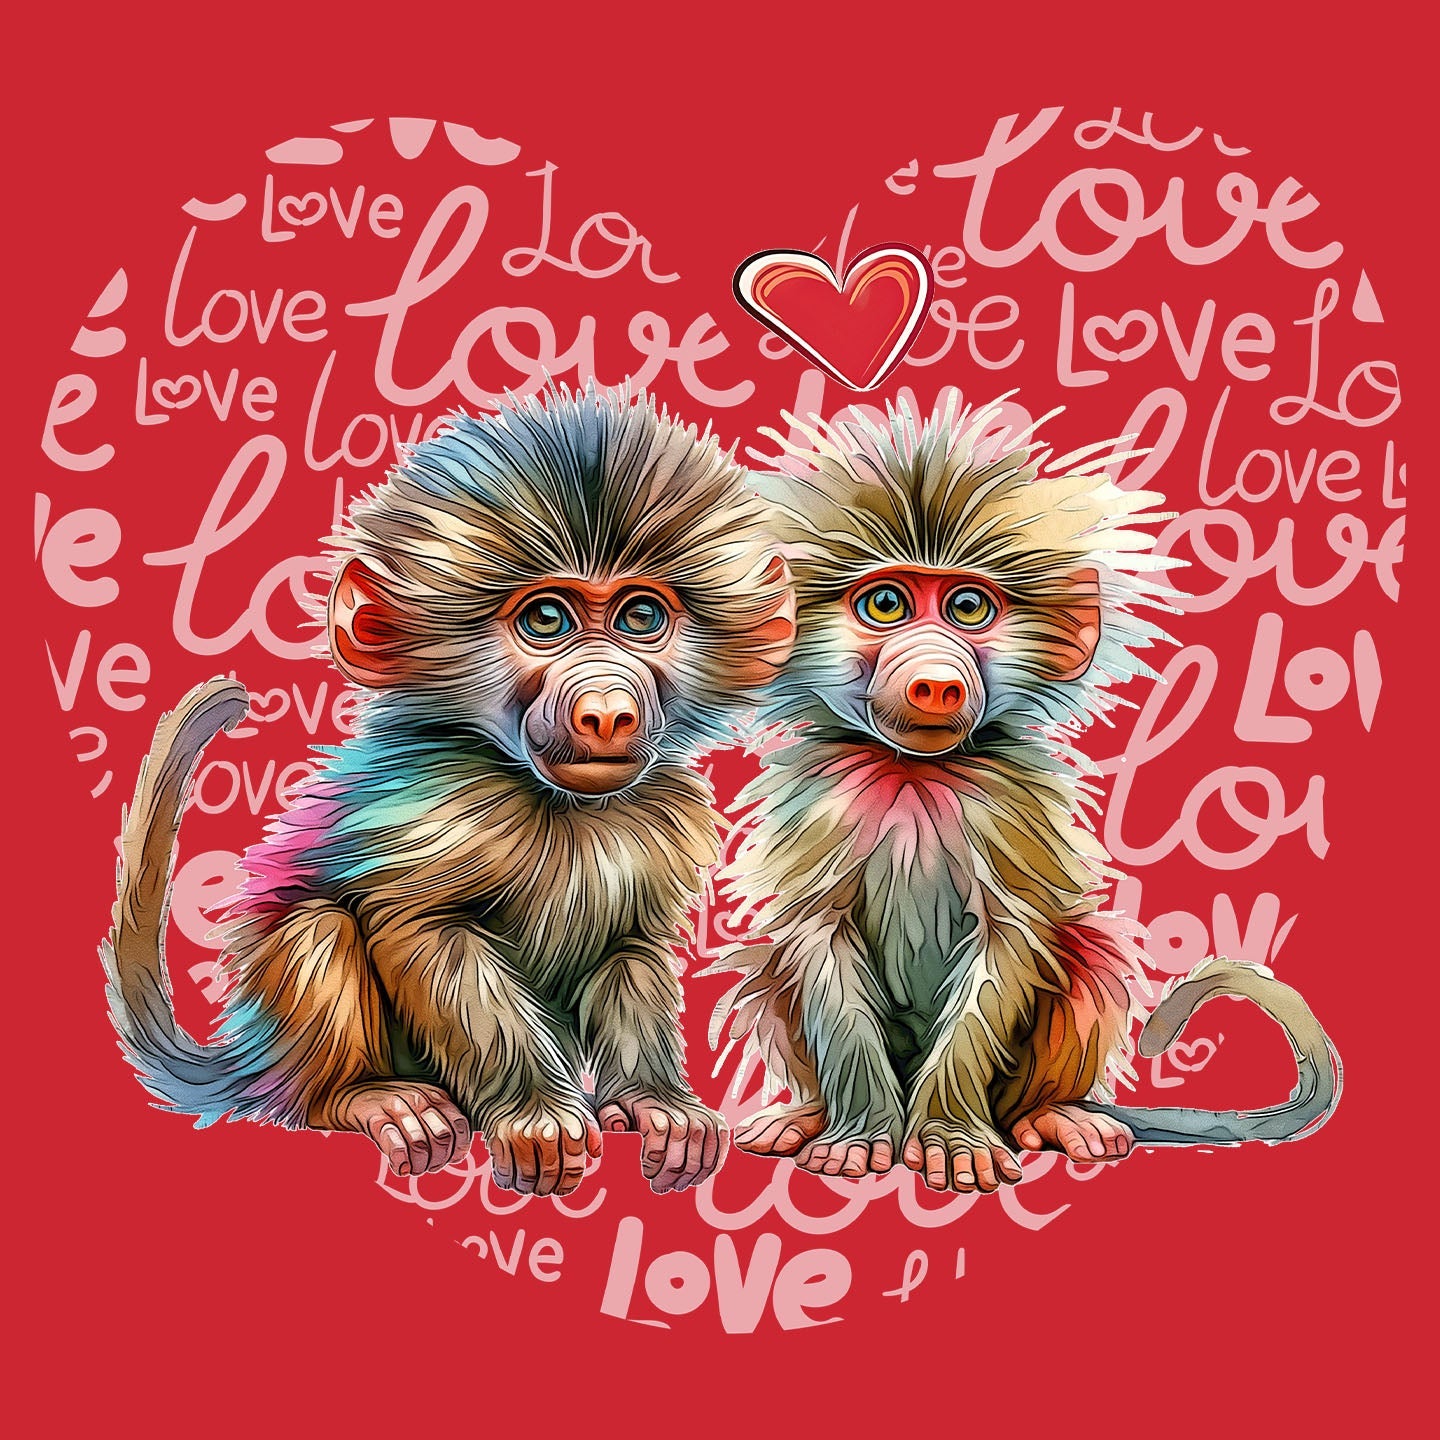 Baboon Love Heart - Kids' Unisex T-Shirt